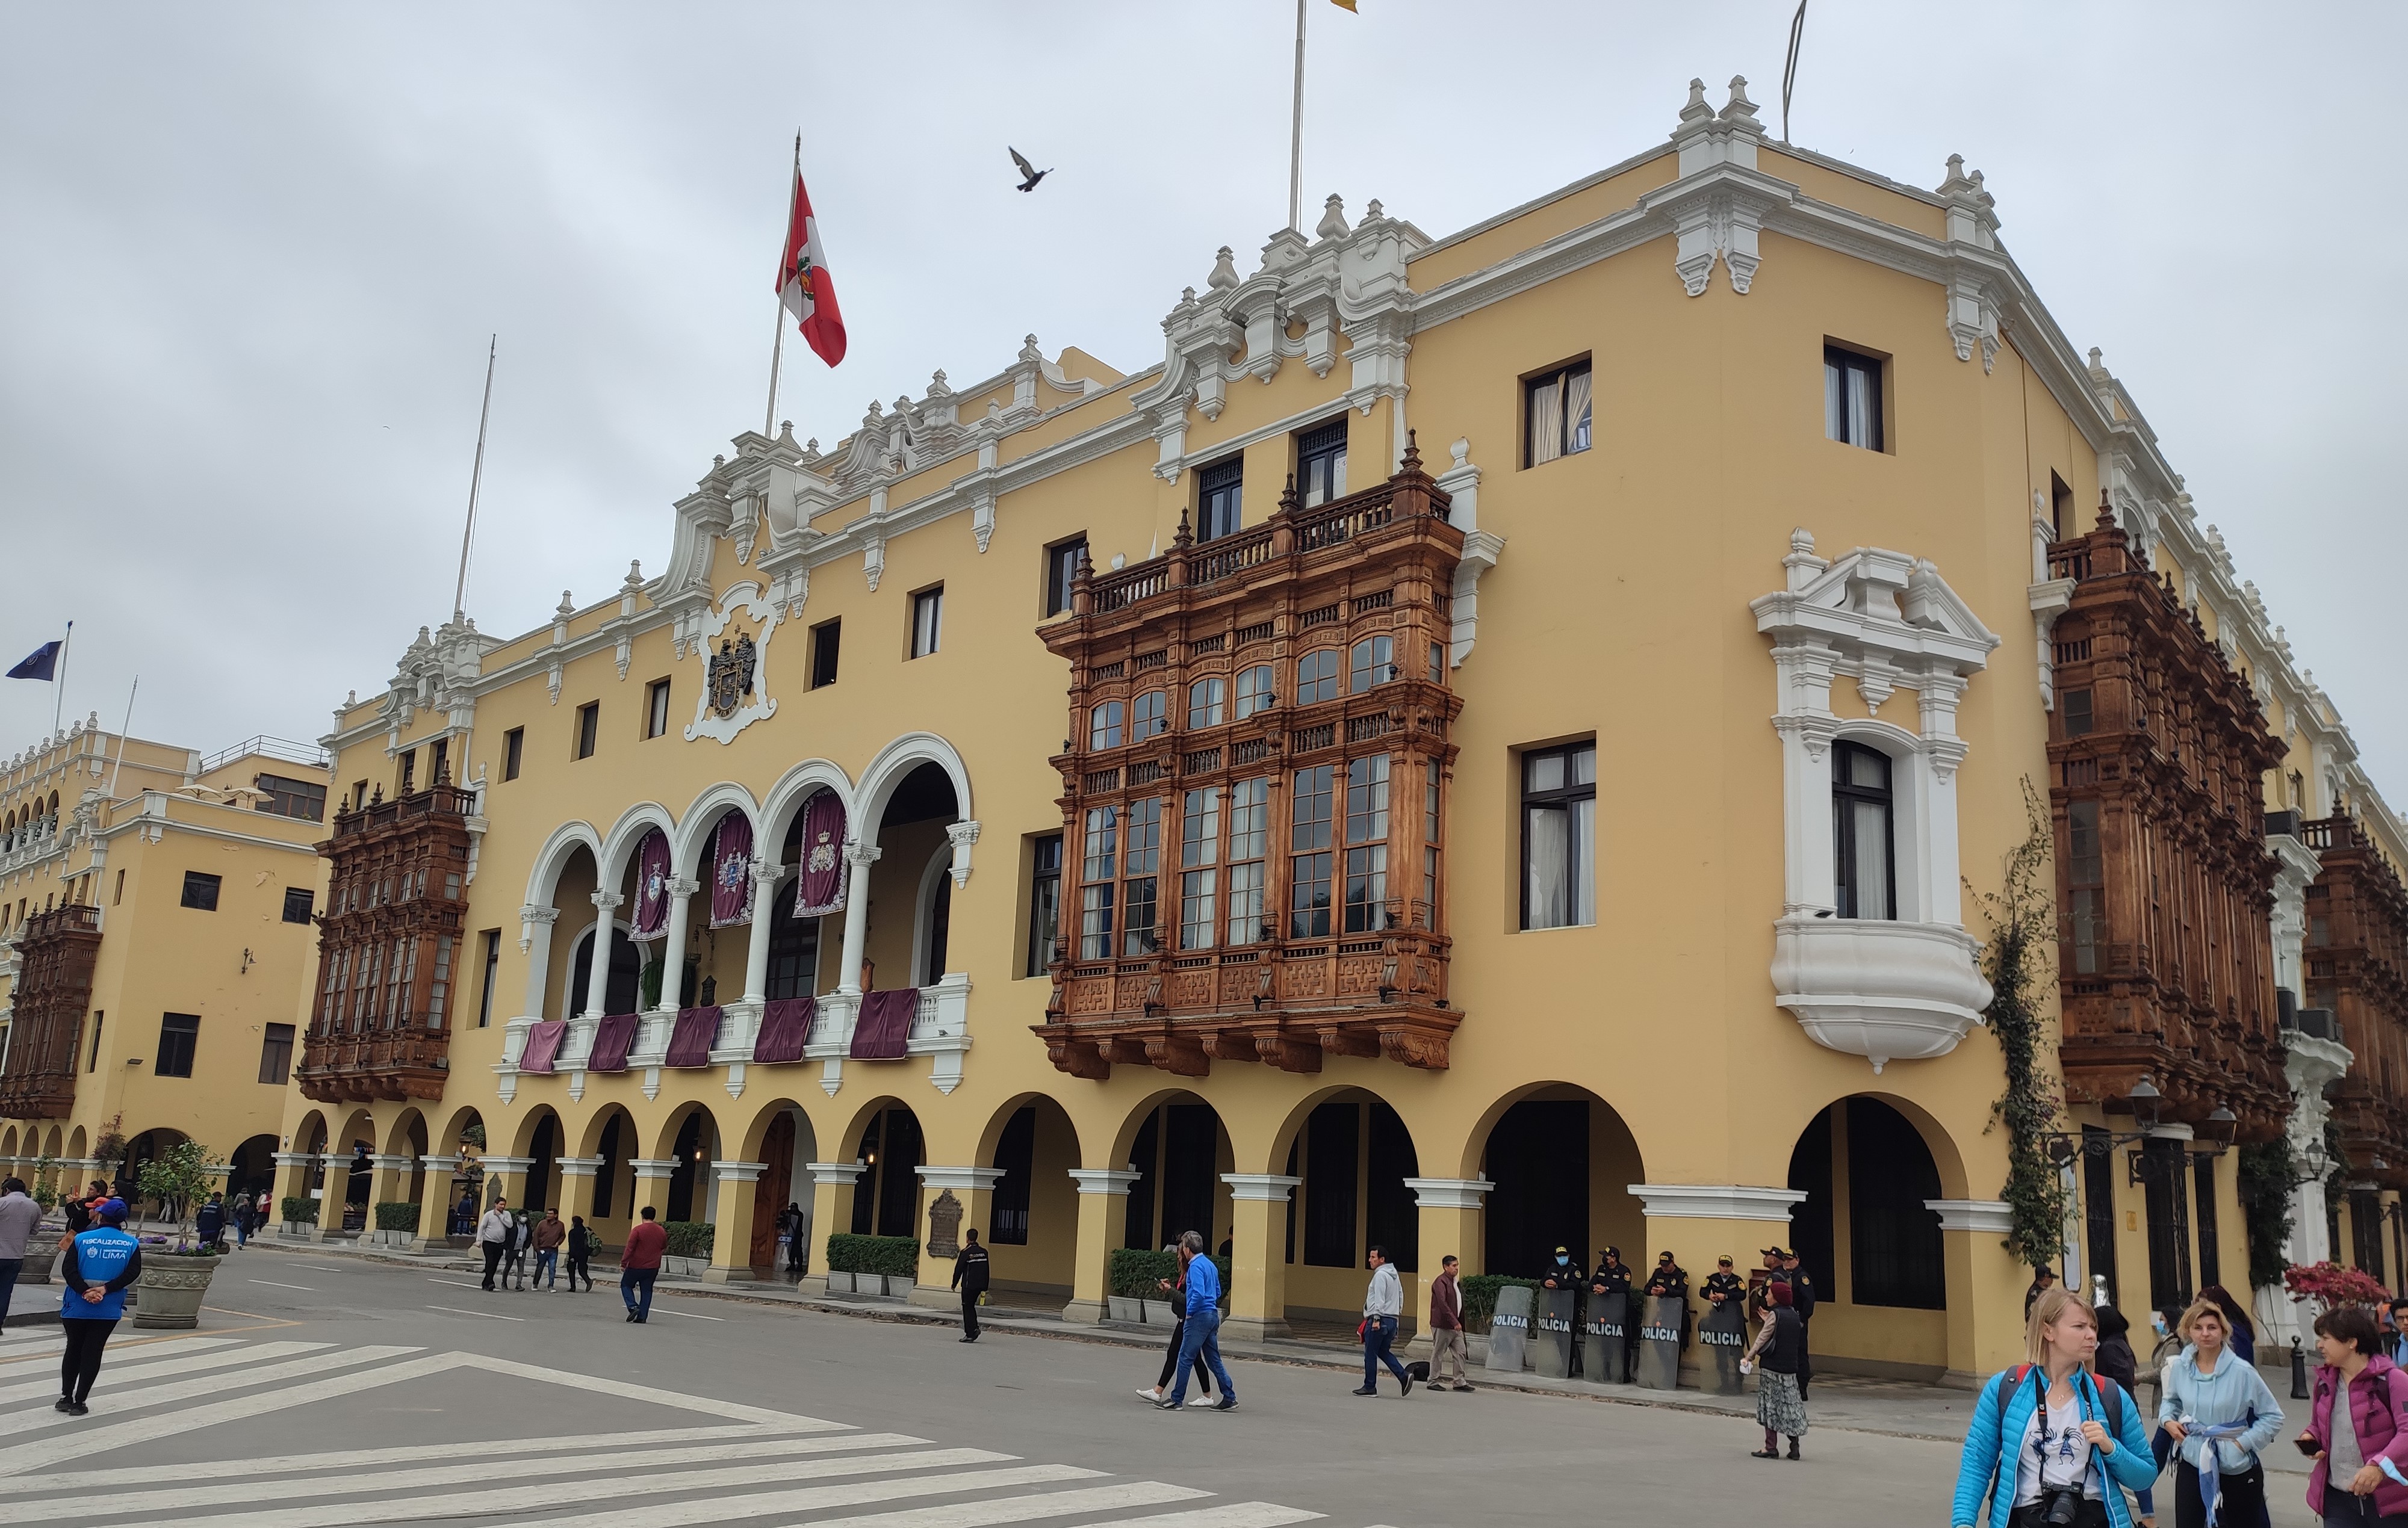 Большие балконы - это архитектурная гордость Лимы. Они все пересчитаны и подробно описаны. Под балконами стоит полиция, её в центре много.